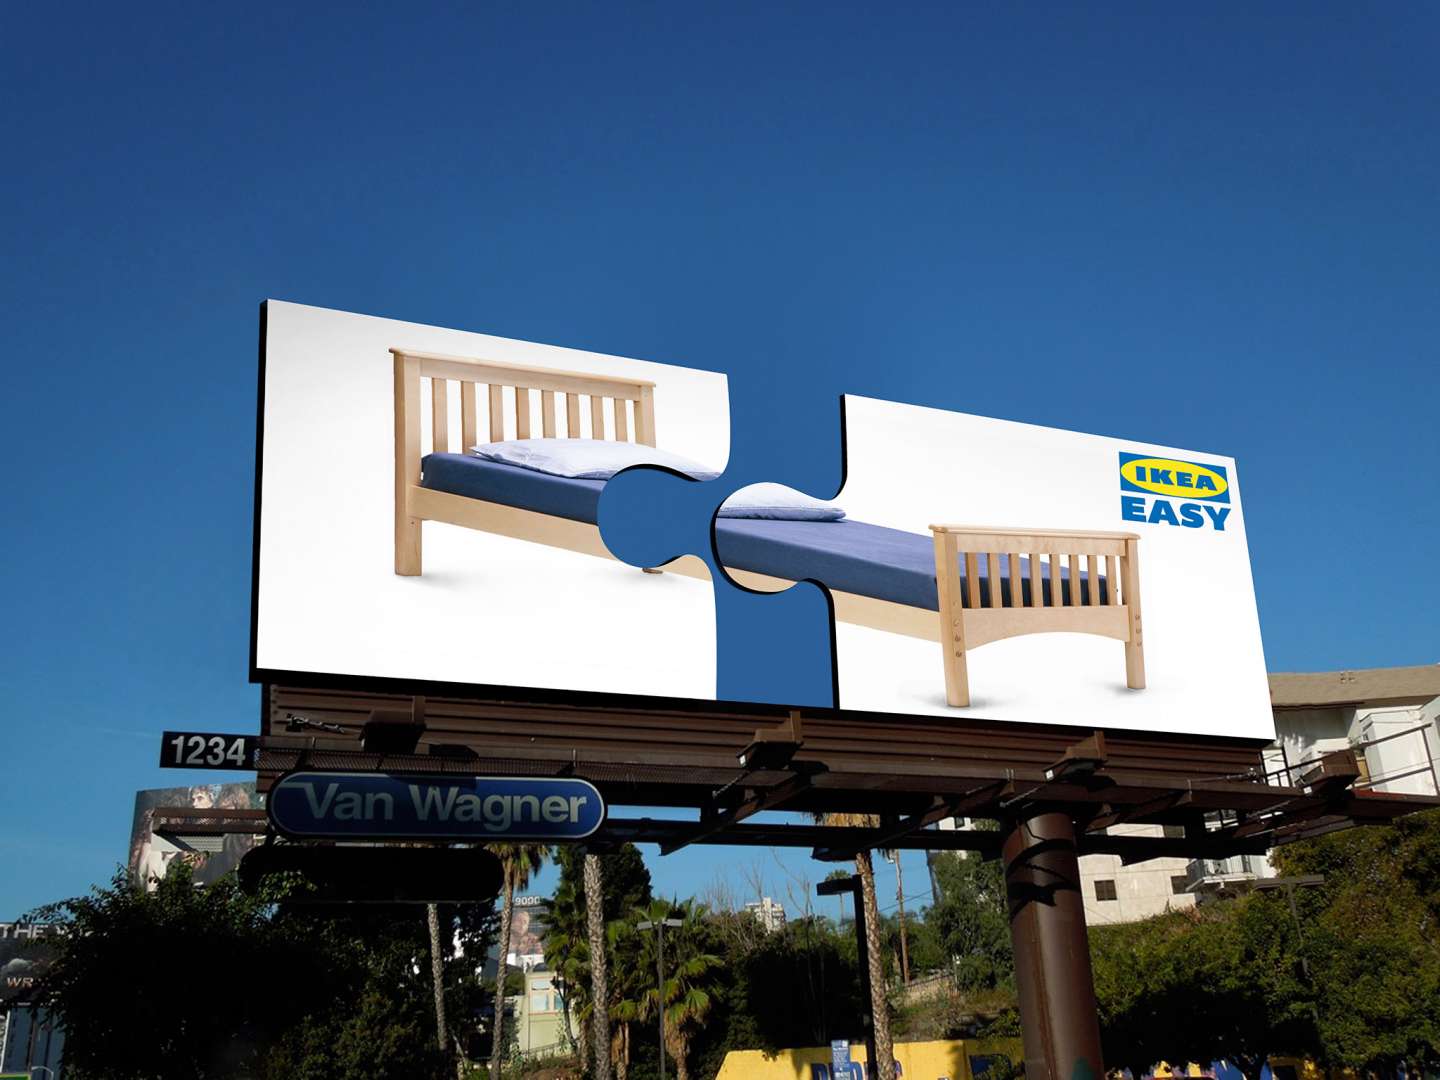 Easy_IKEA